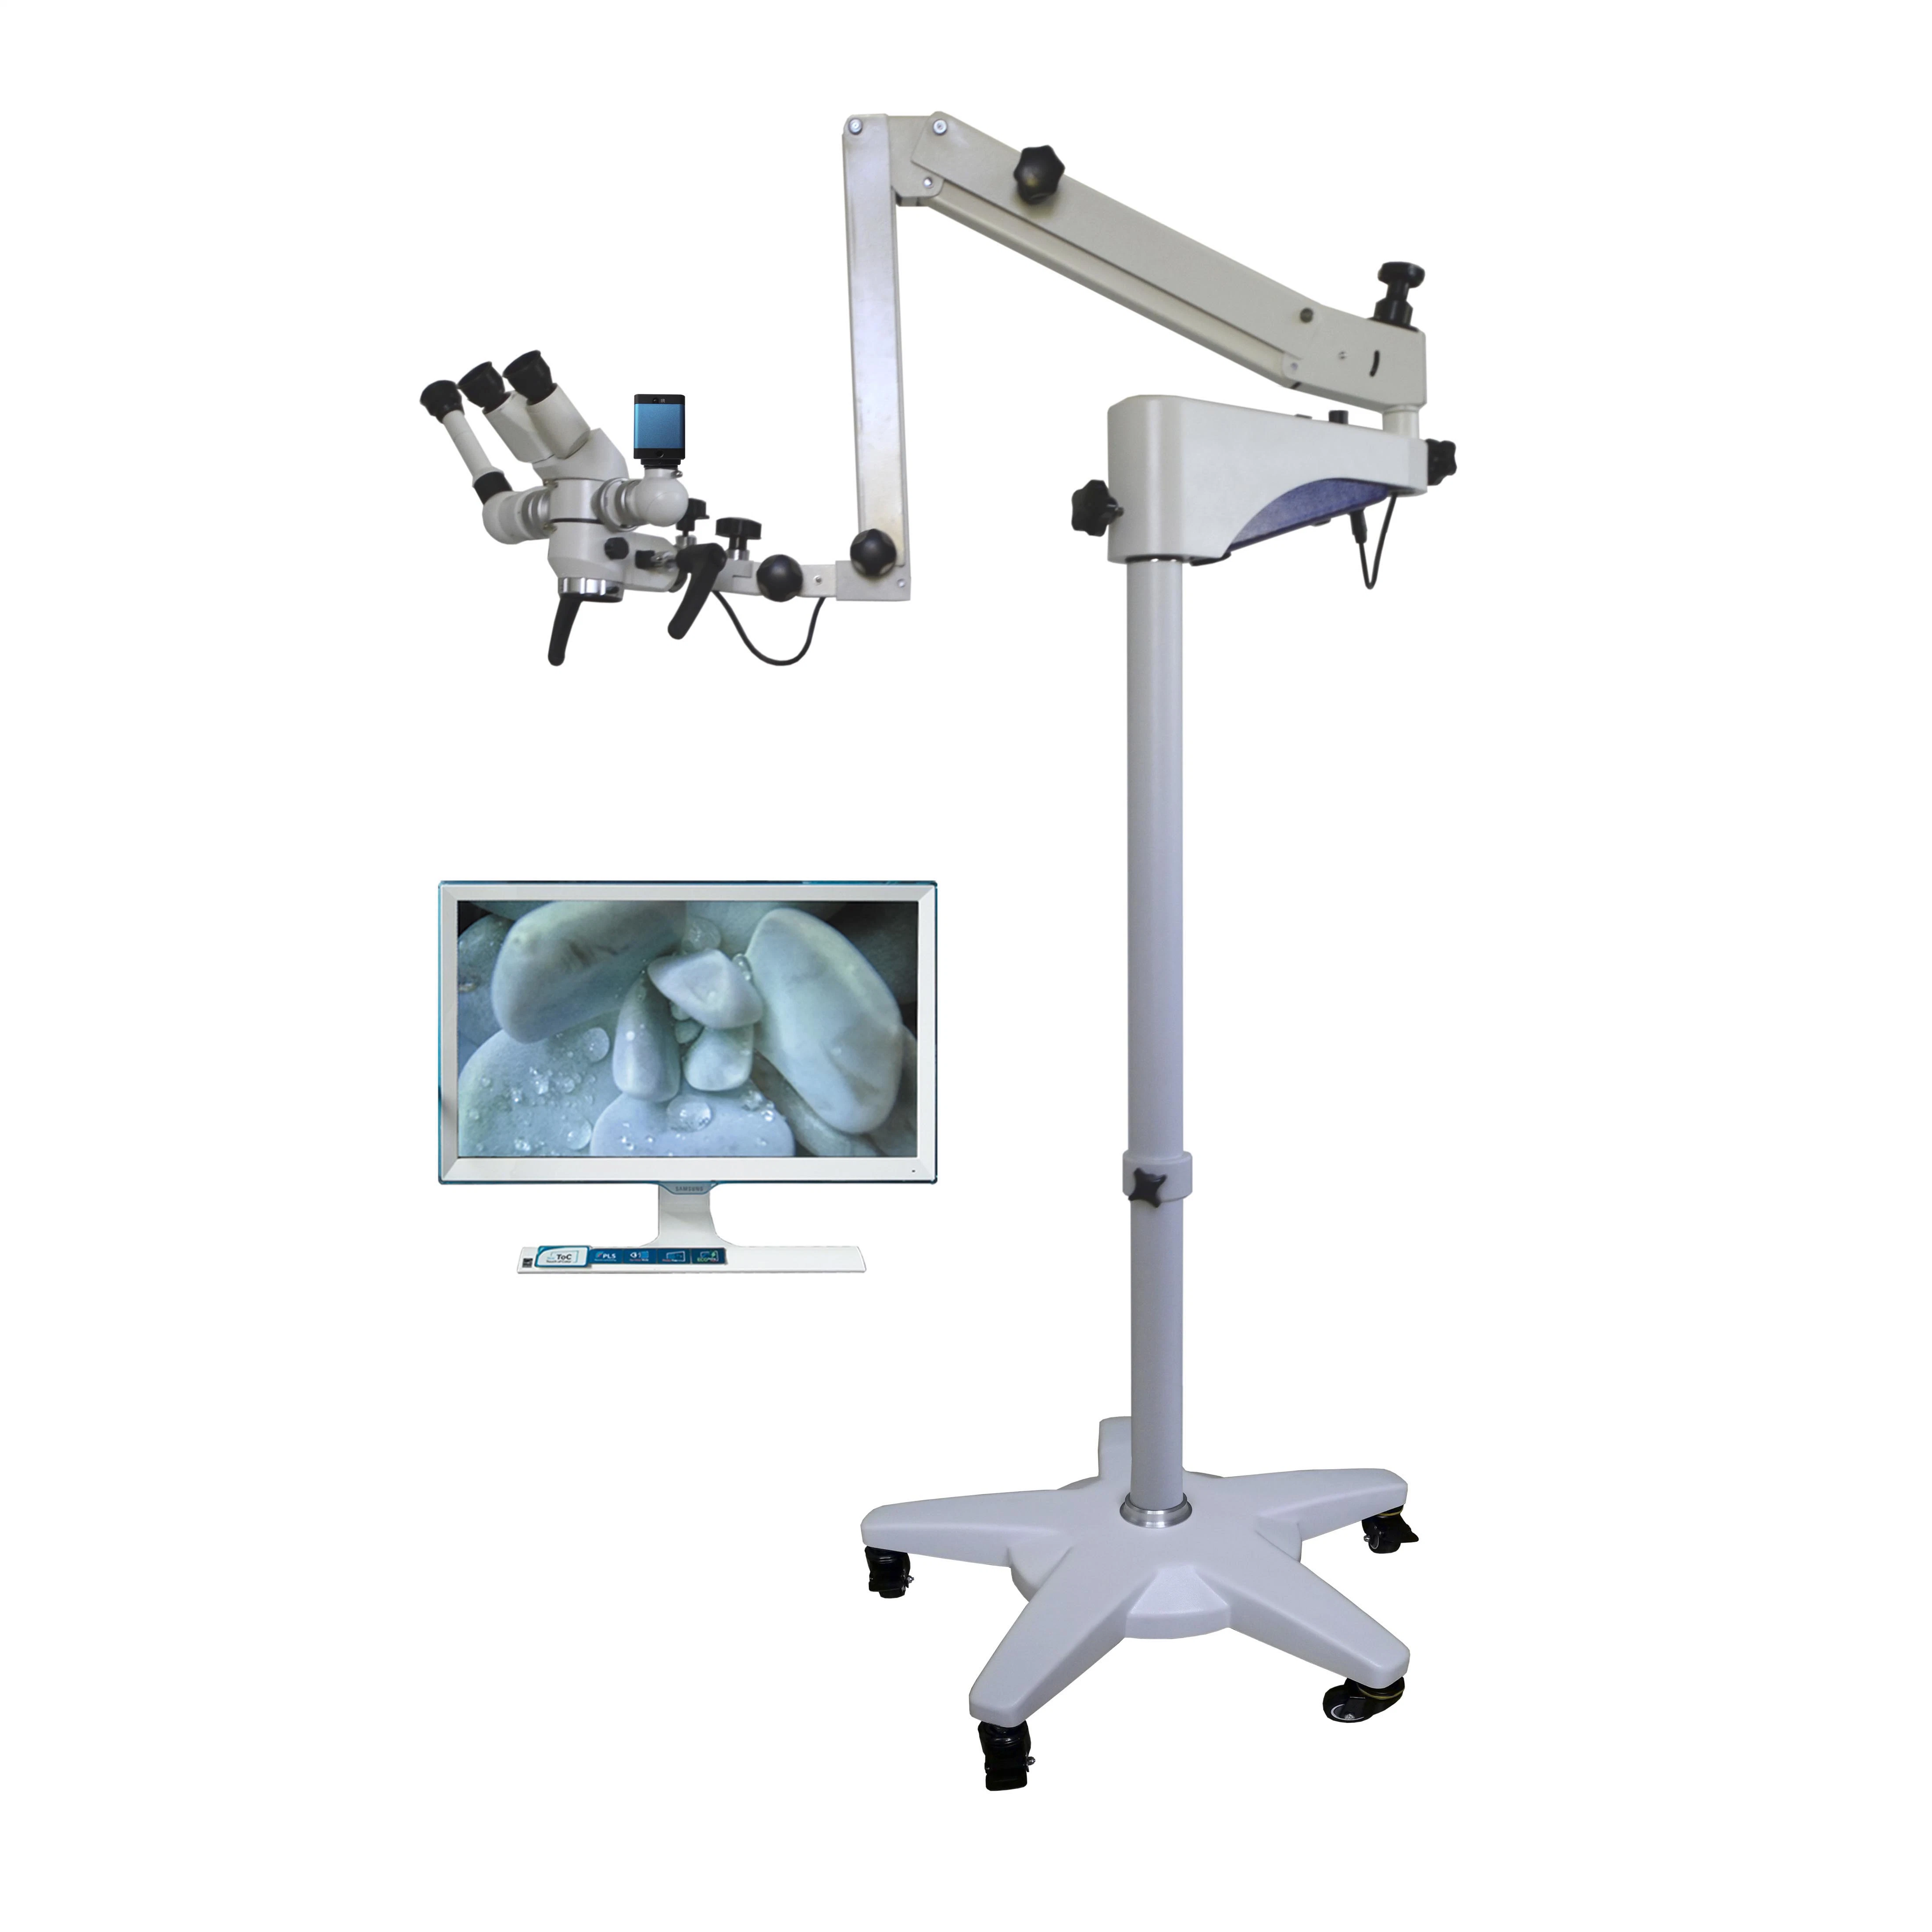 Precio más barato Xty-120 Xty-130 LED óptico Binocular fijo Oftalmología Otorrinolaringología operación quirúrgica Dental microscopio